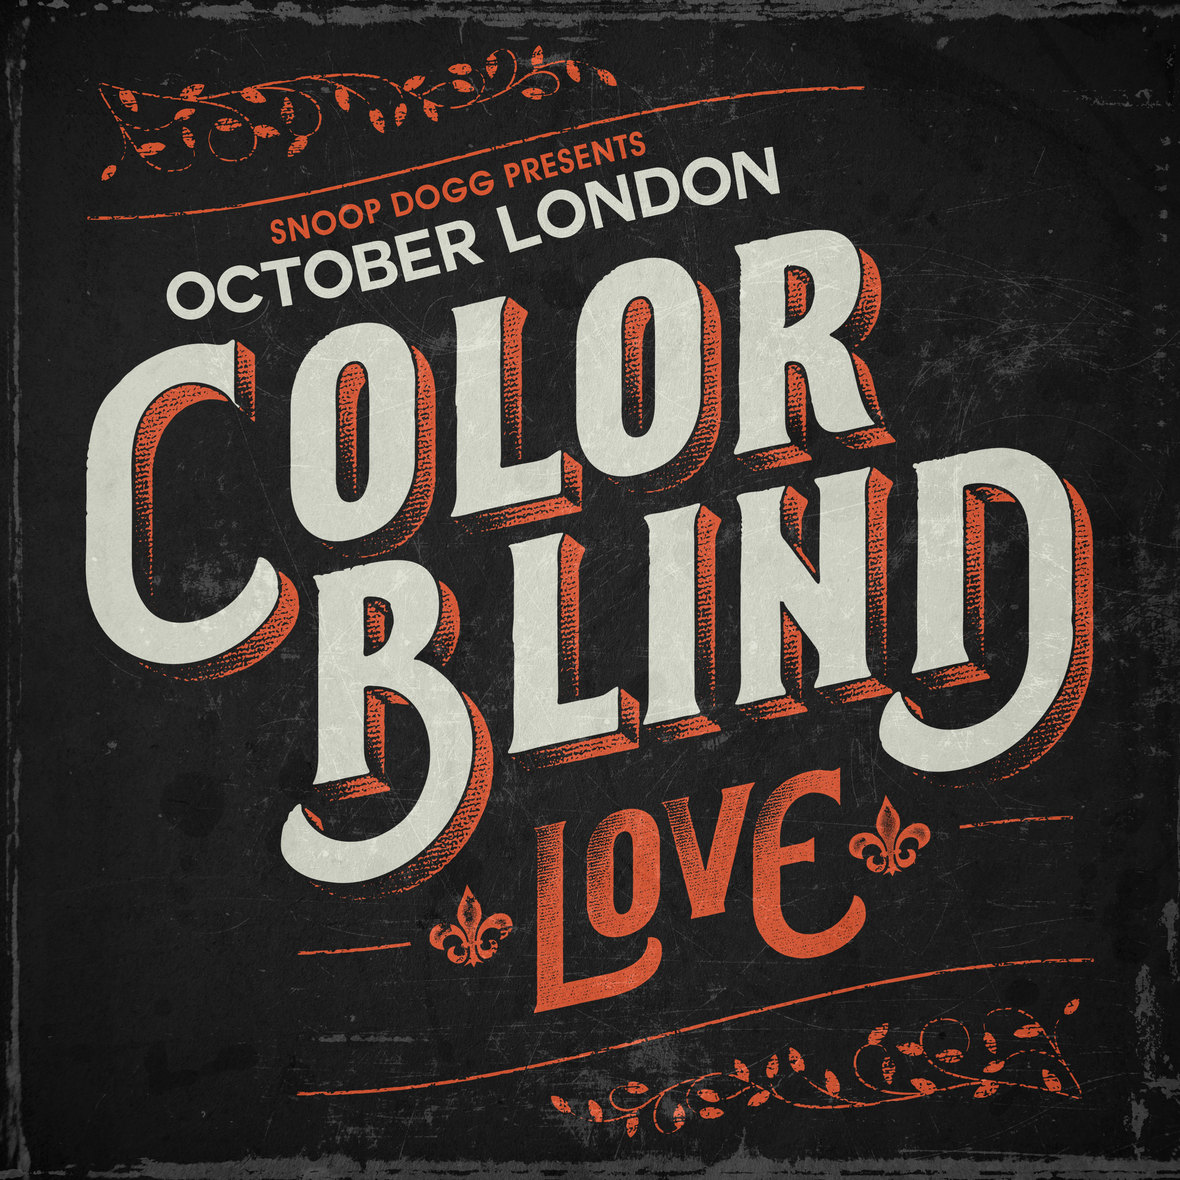 October London Color Blind Love